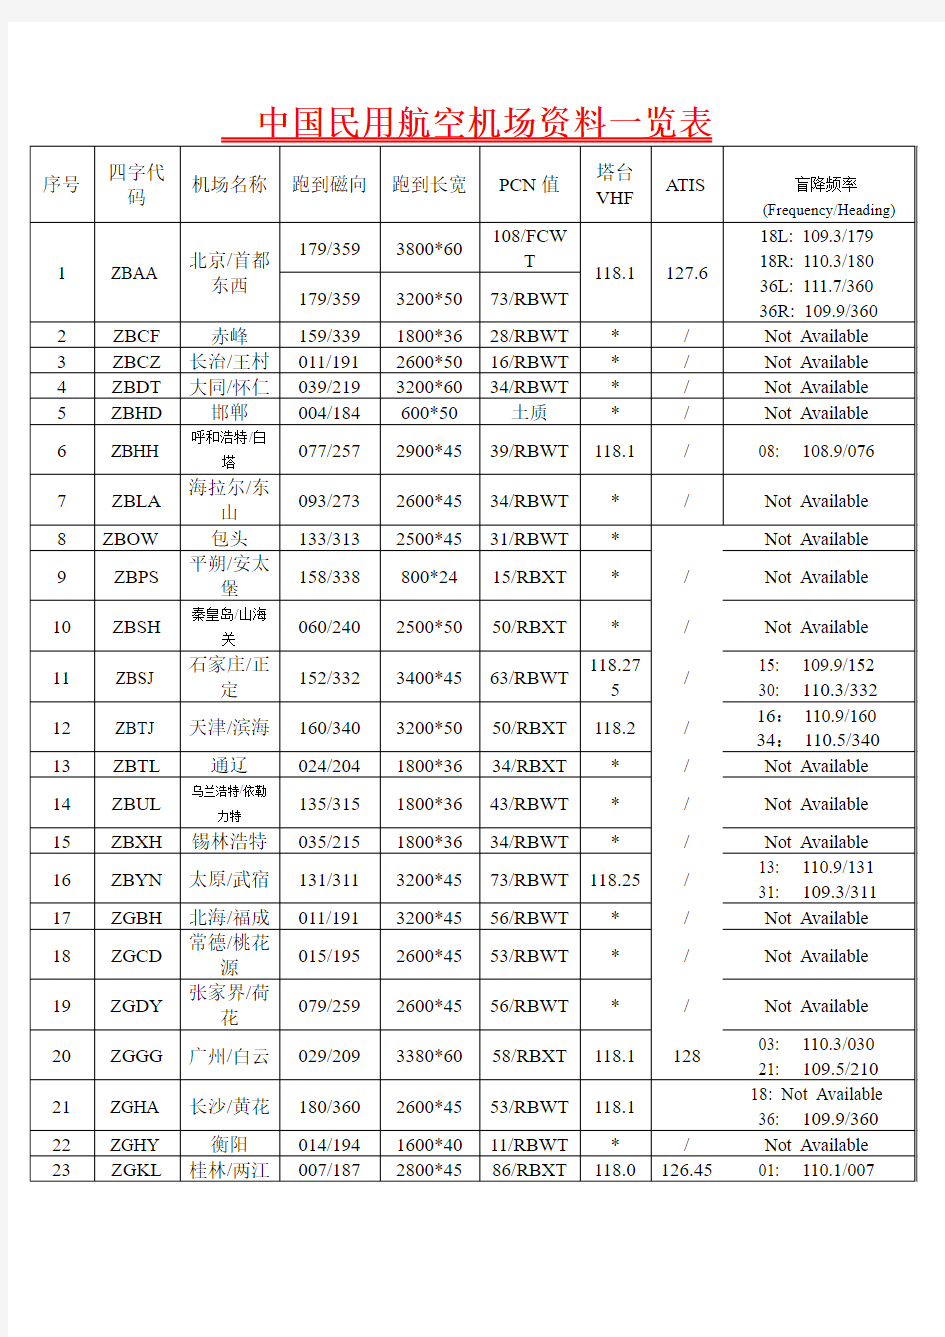 中国民用航空机场资料一览表(已添加盲降频率)